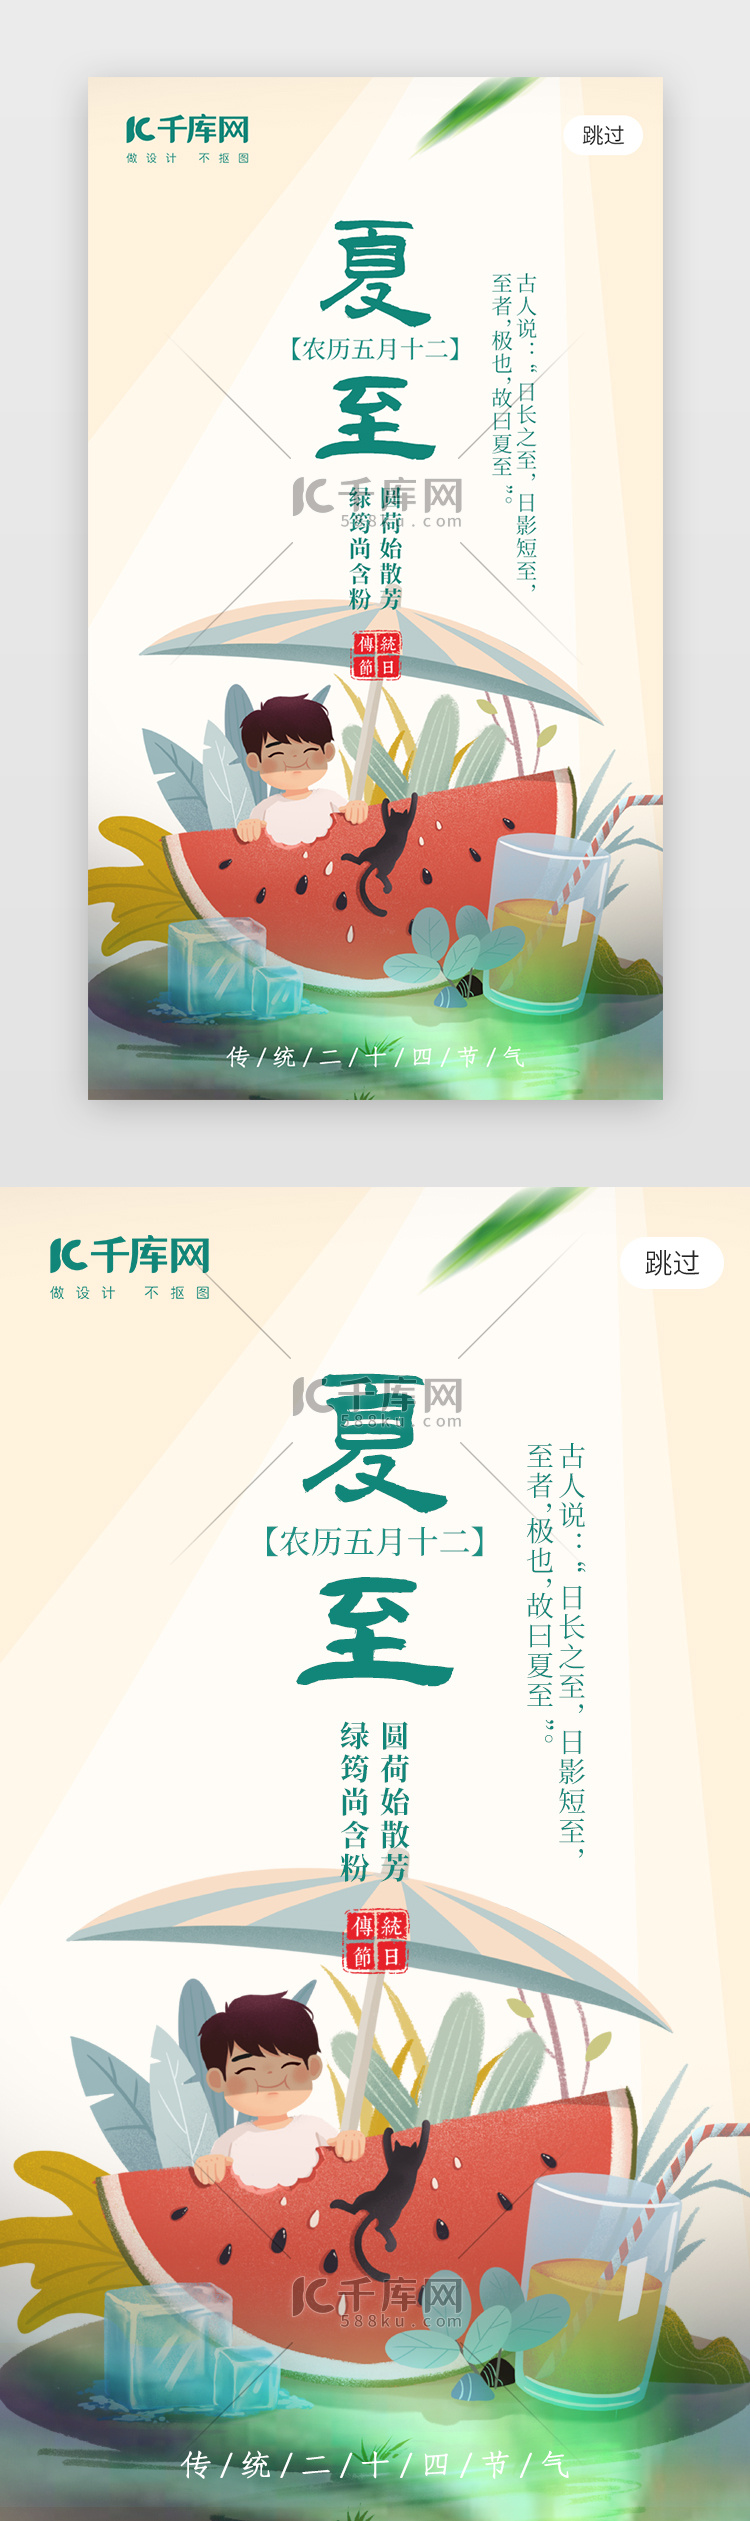 夏至app闪屏插画米黄色西瓜男孩